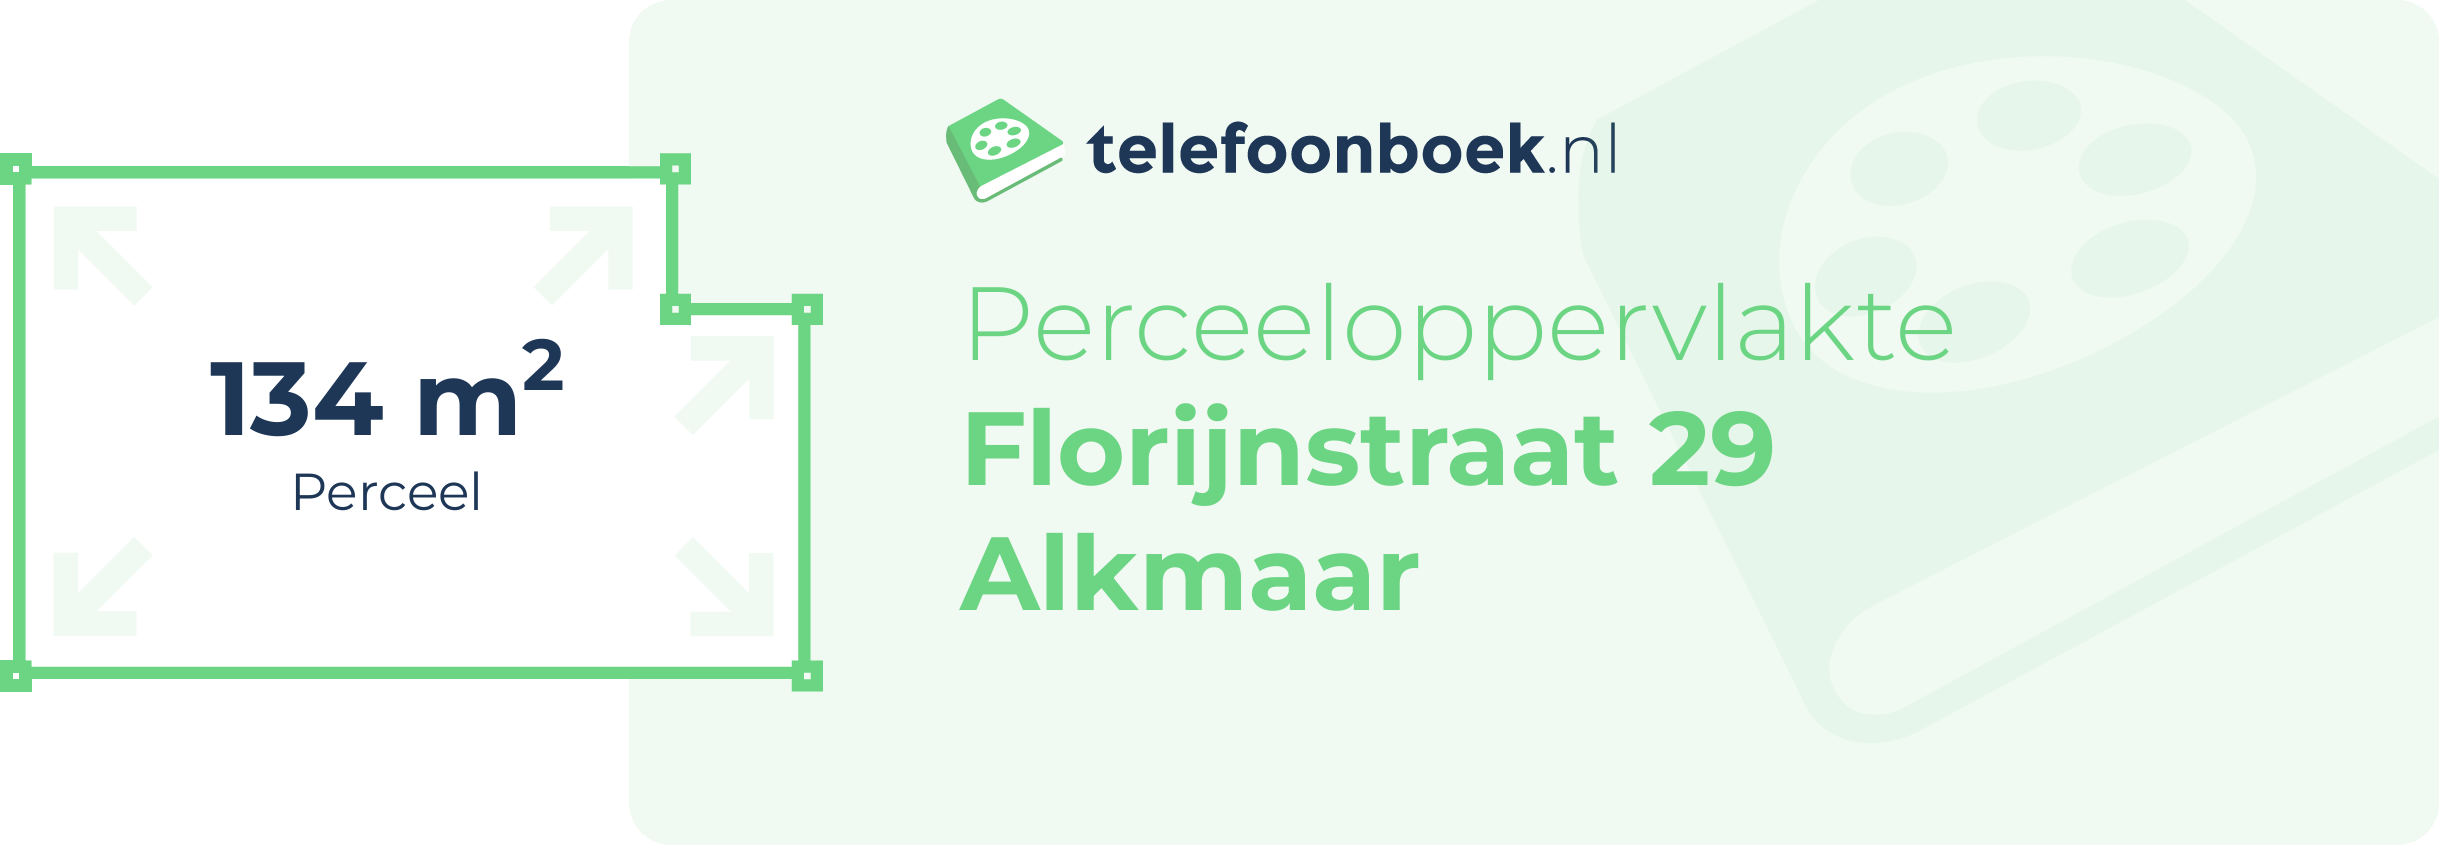 Perceeloppervlakte Florijnstraat 29 Alkmaar